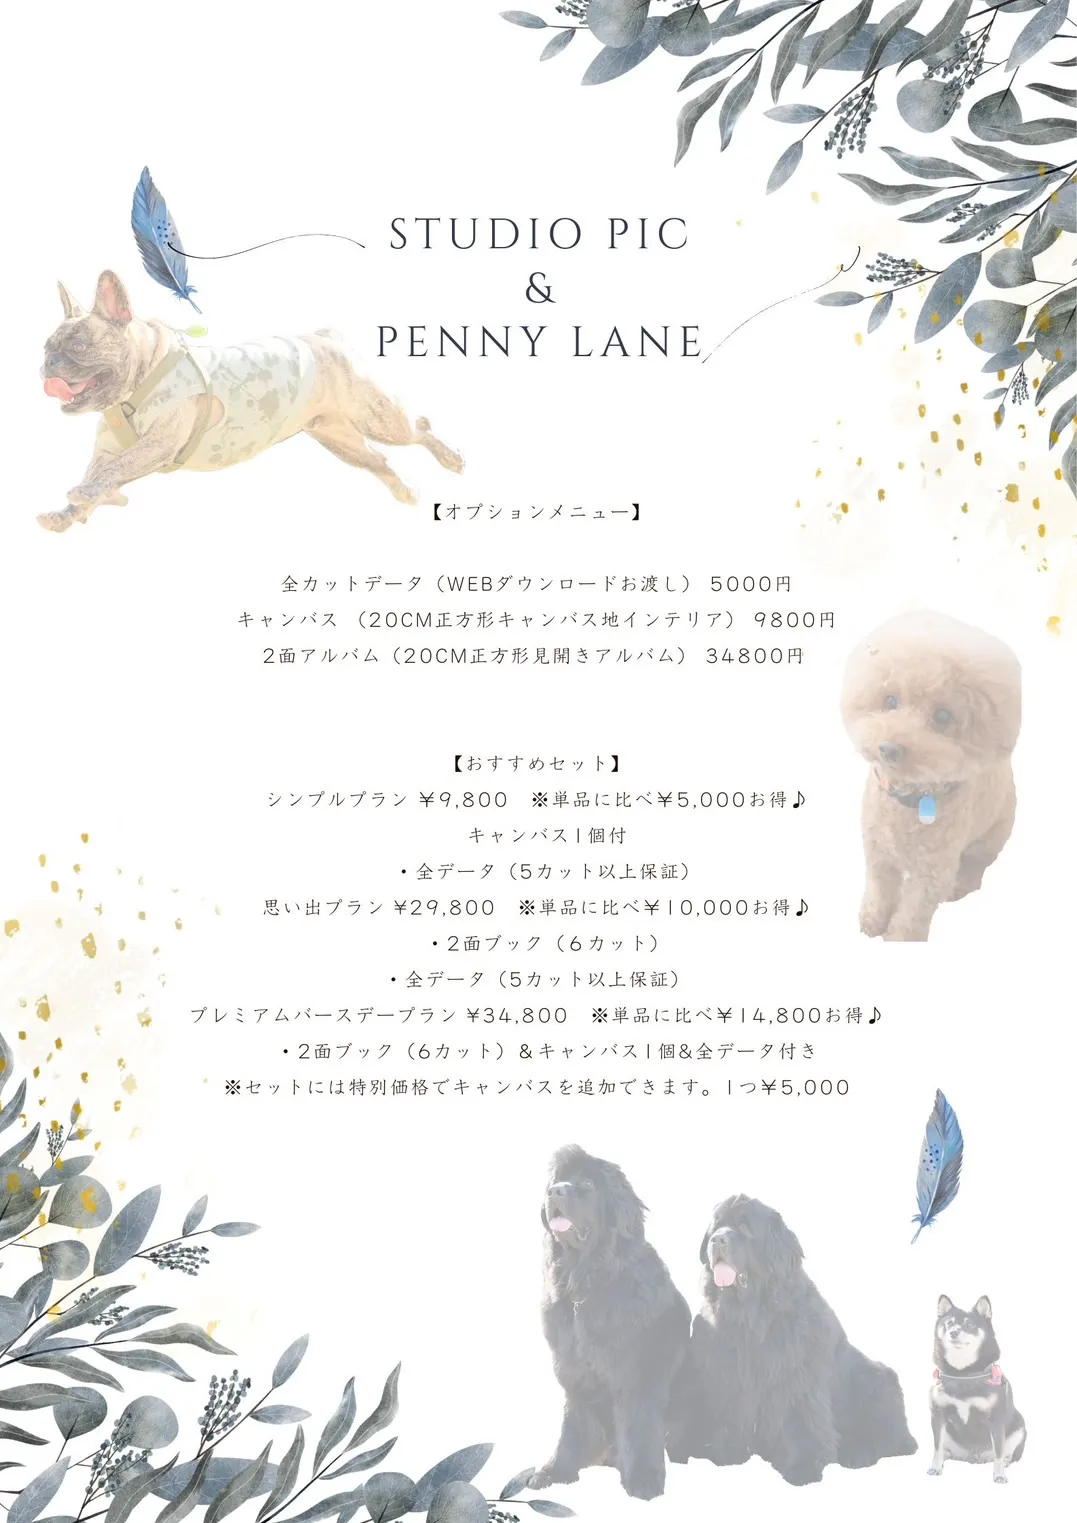 つくば penny lane ペニーレーン スタジオピック ドッグフォト イベント